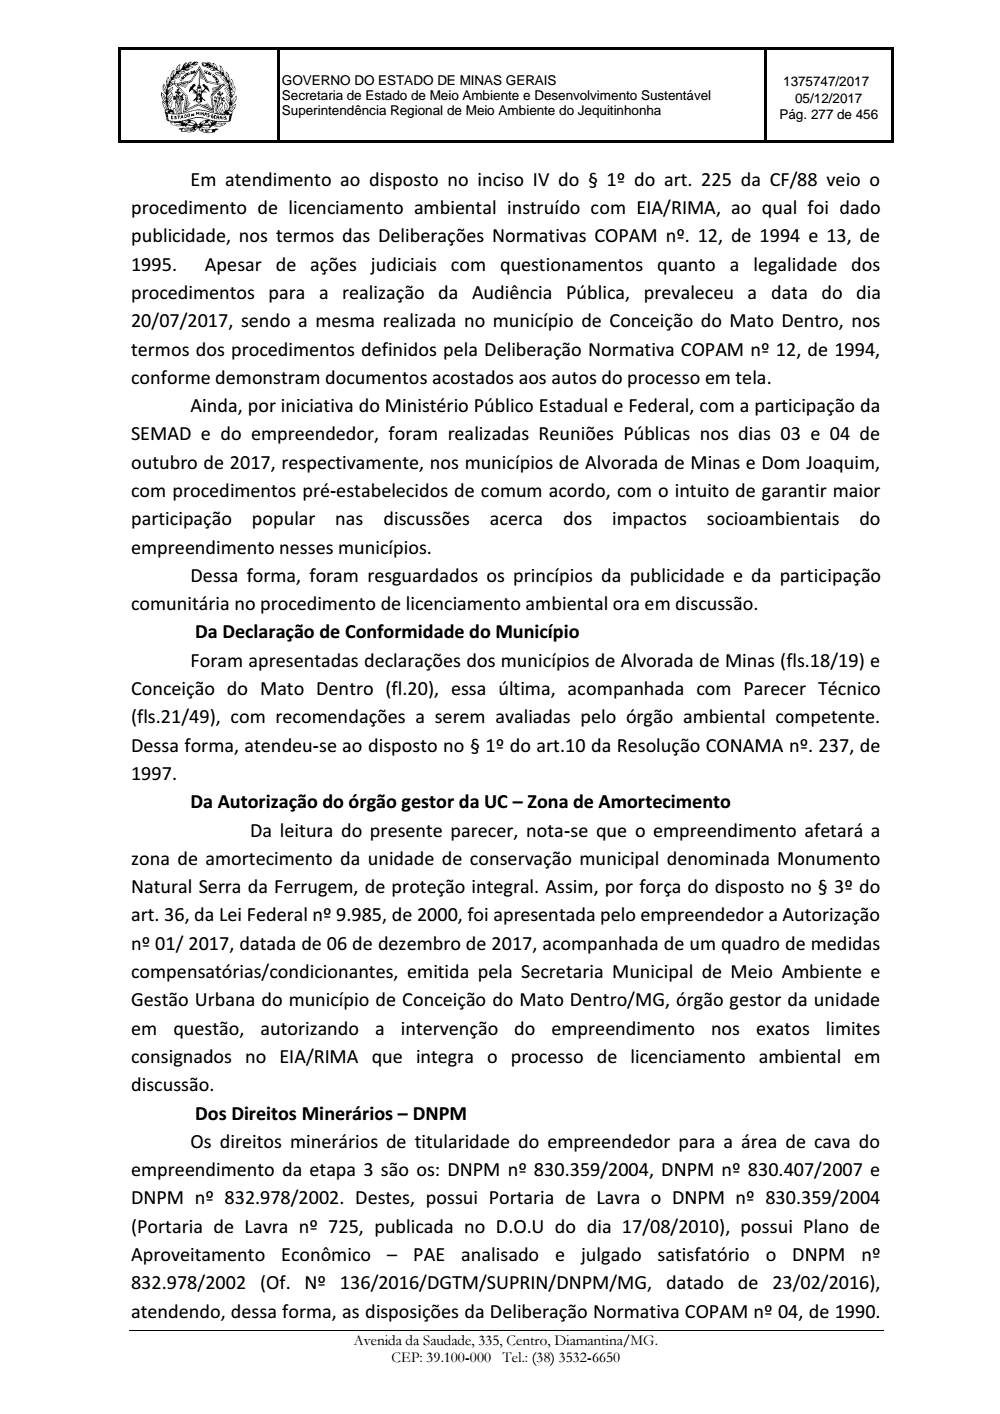 Page 277 from Parecer único da Secretaria de estado de Meio Ambiente e Desenvolvimento Sustentável (SEMAD)